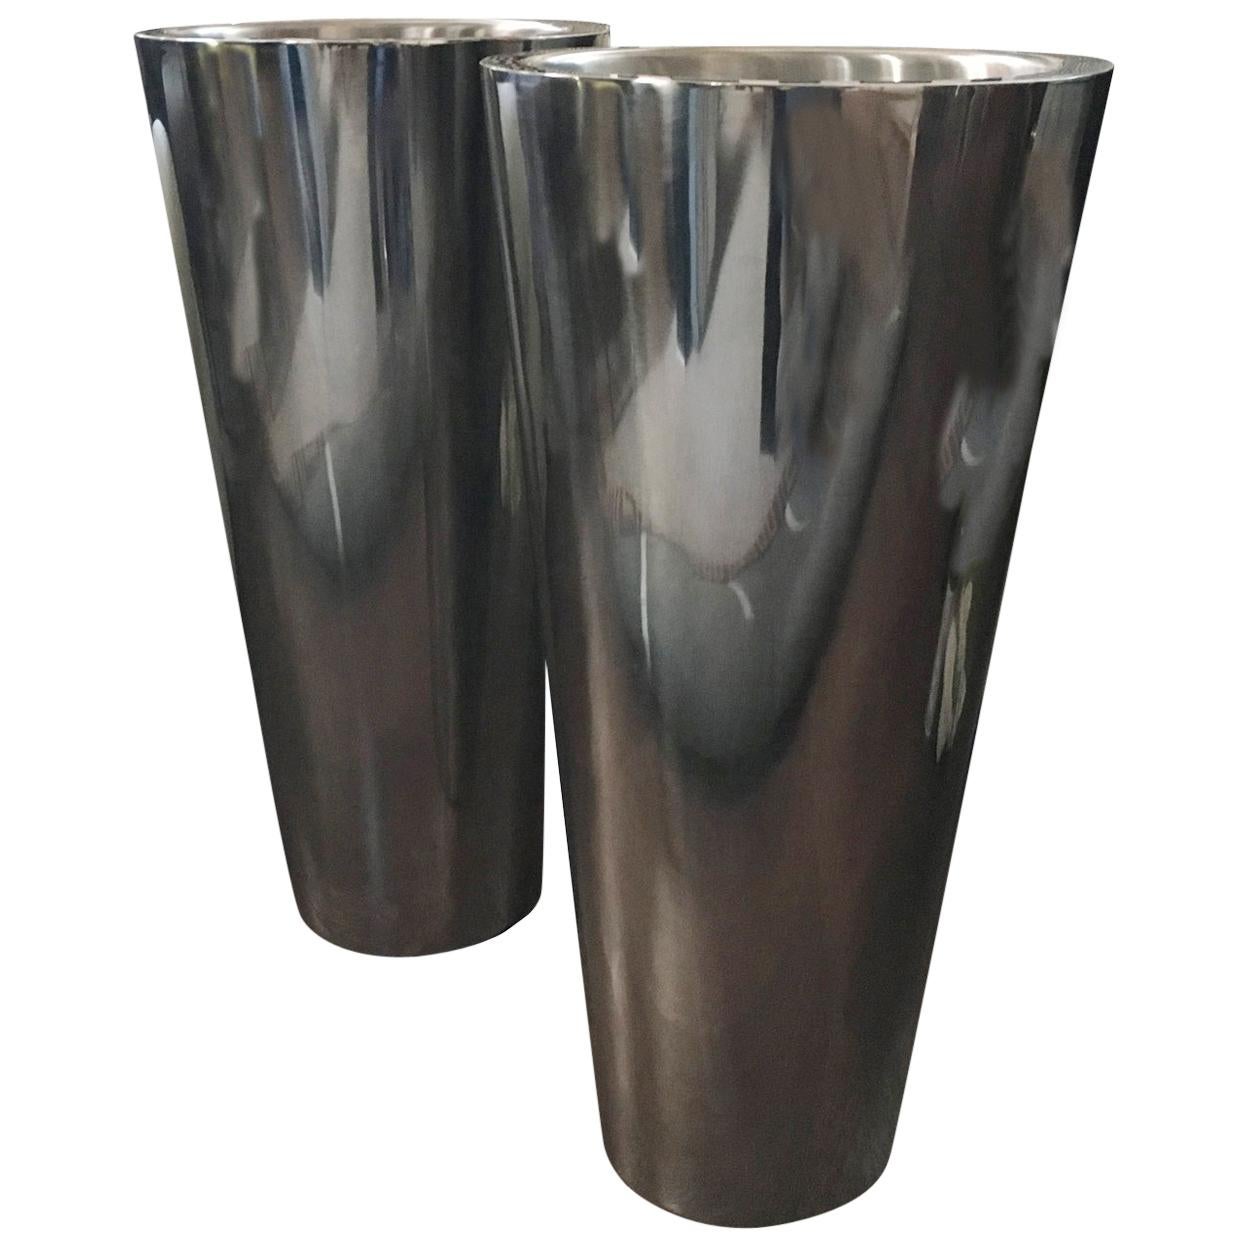 Italian Design Pair Metal Chrome Finish Vases